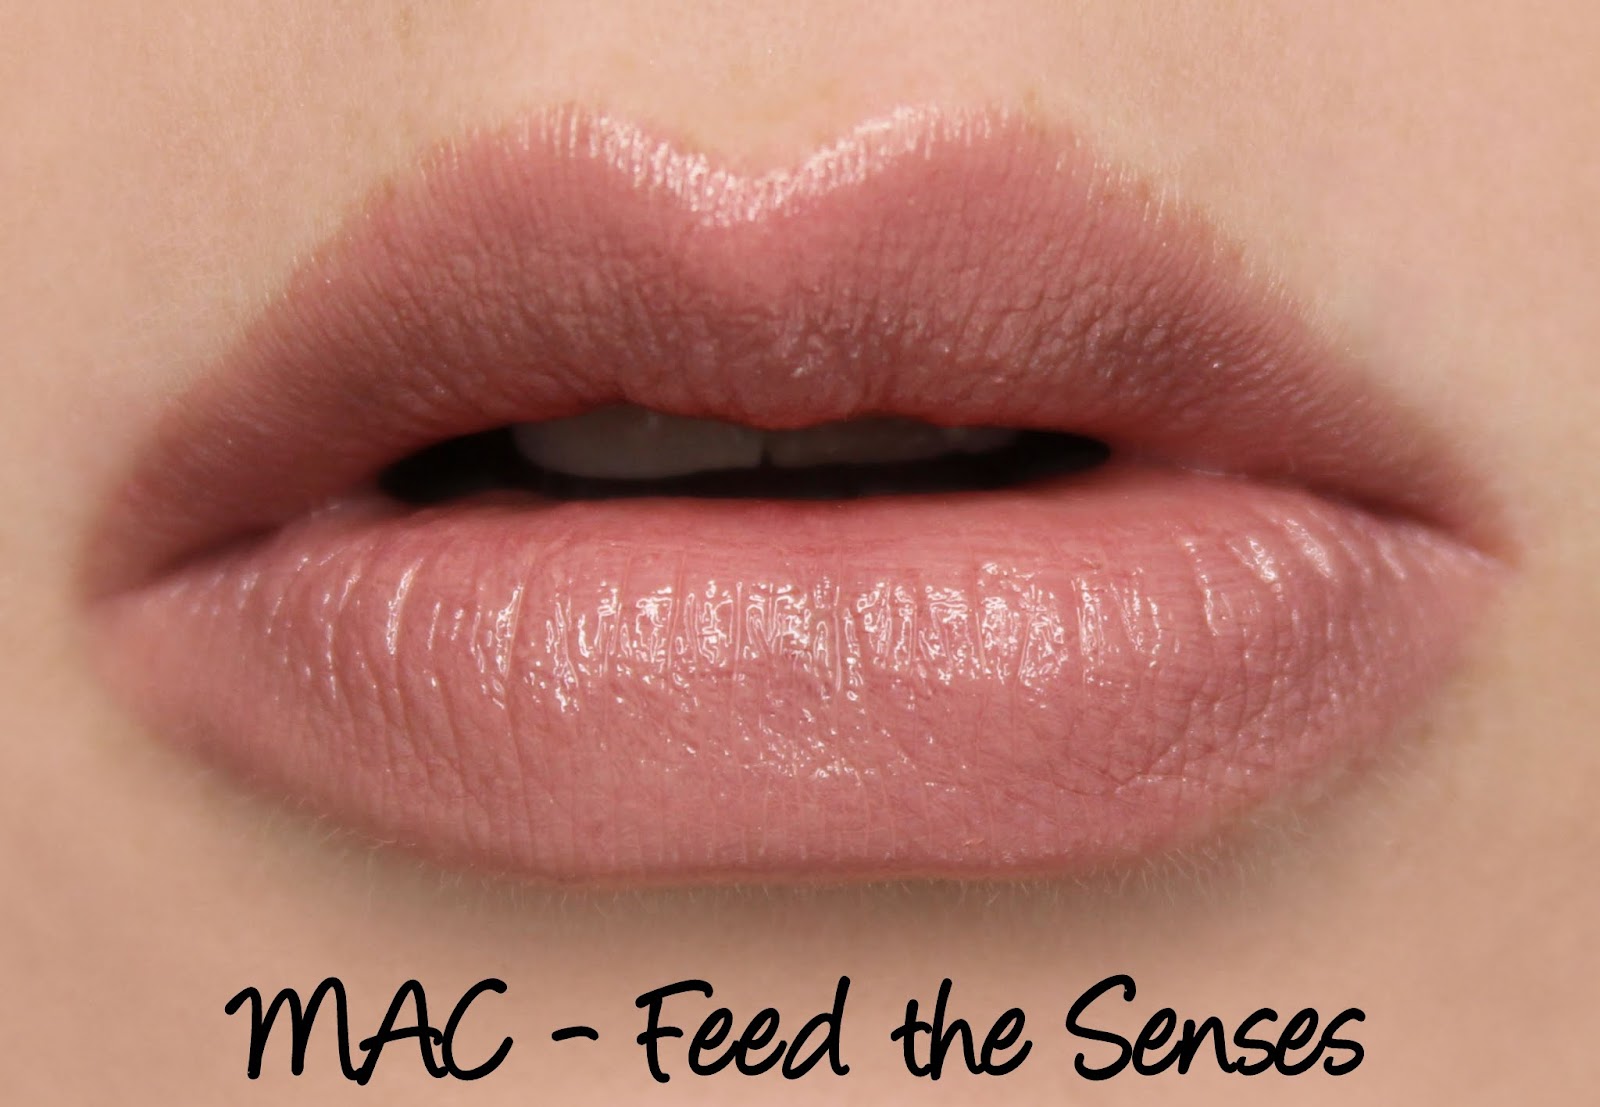 à¸à¸¥à¸à¸²à¸£à¸à¹à¸à¸«à¸²à¸£à¸¹à¸à¸�à¸²à¸à¸ªà¸³à¸«à¸£à¸±à¸ mac Lustre lipstick Feed The Senses